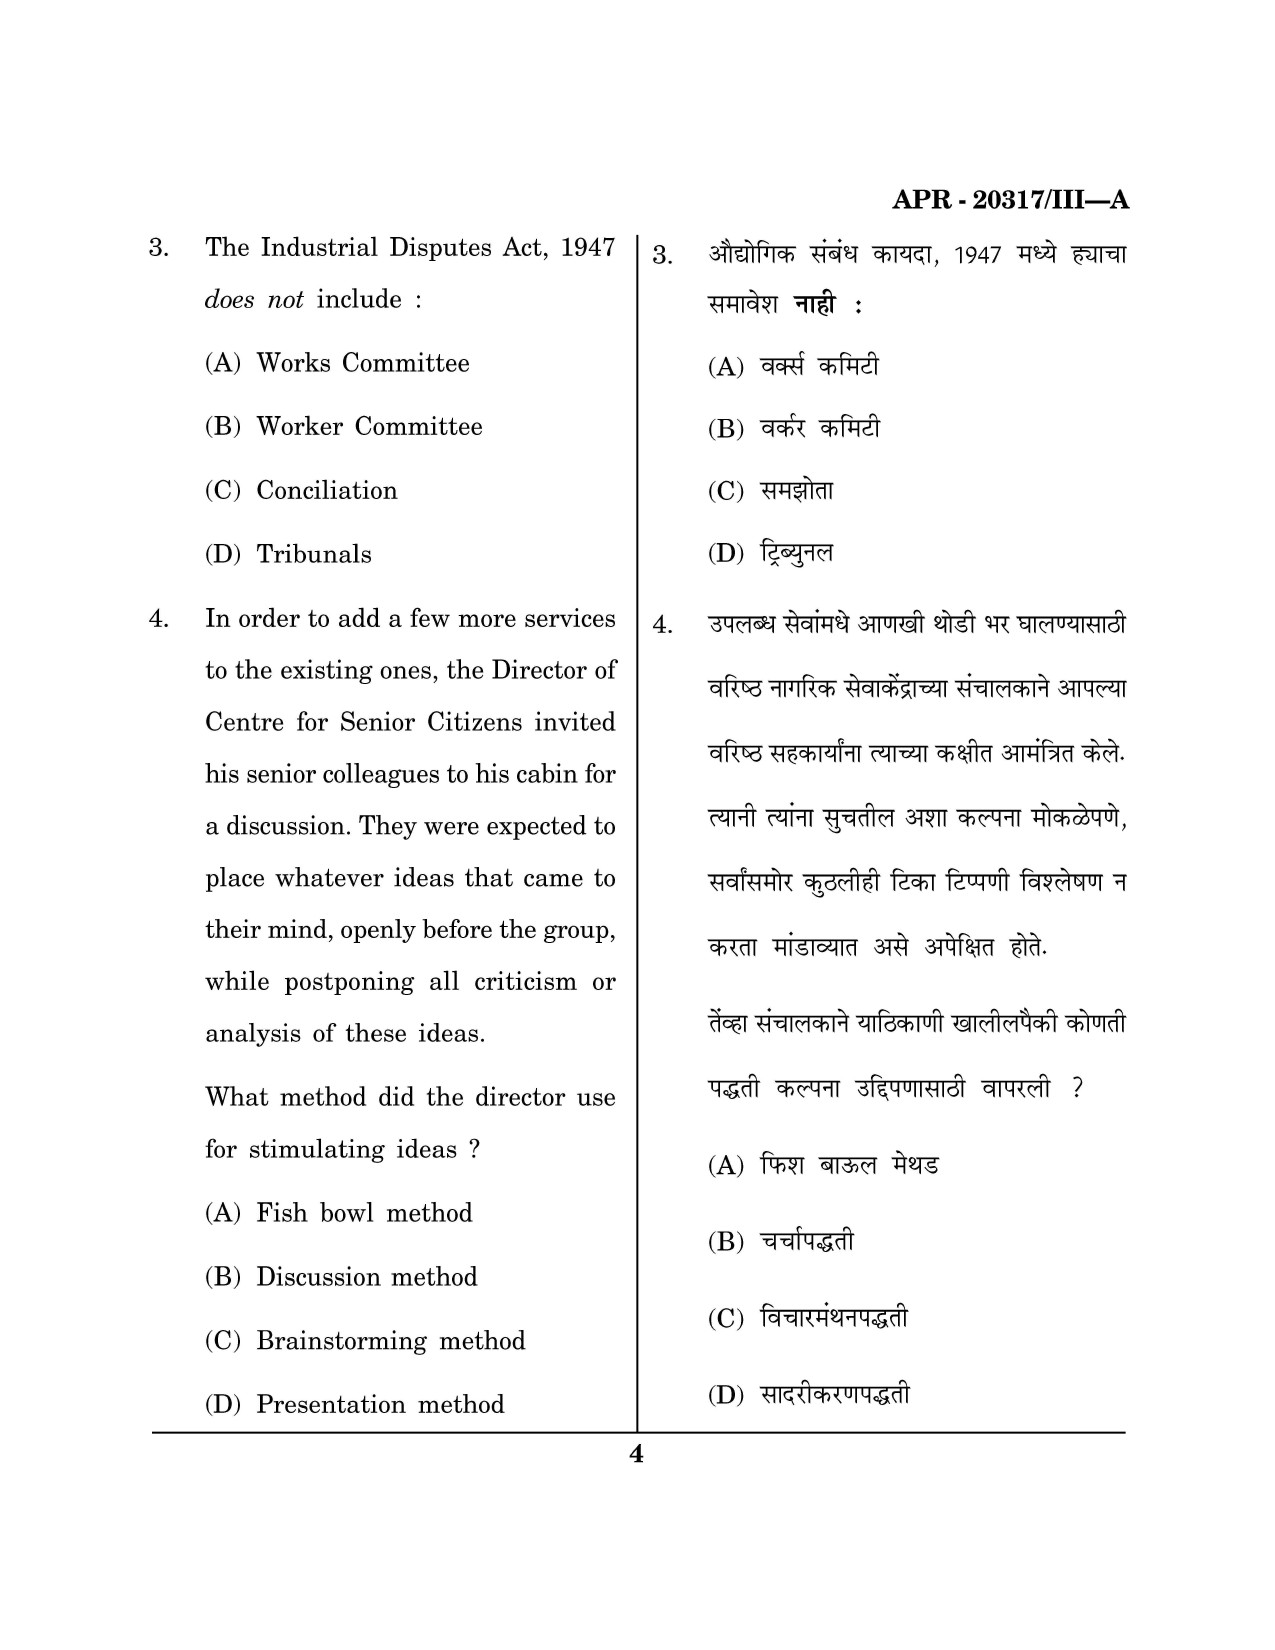 Maharashtra SET Social Work Question Paper III April 2017 3